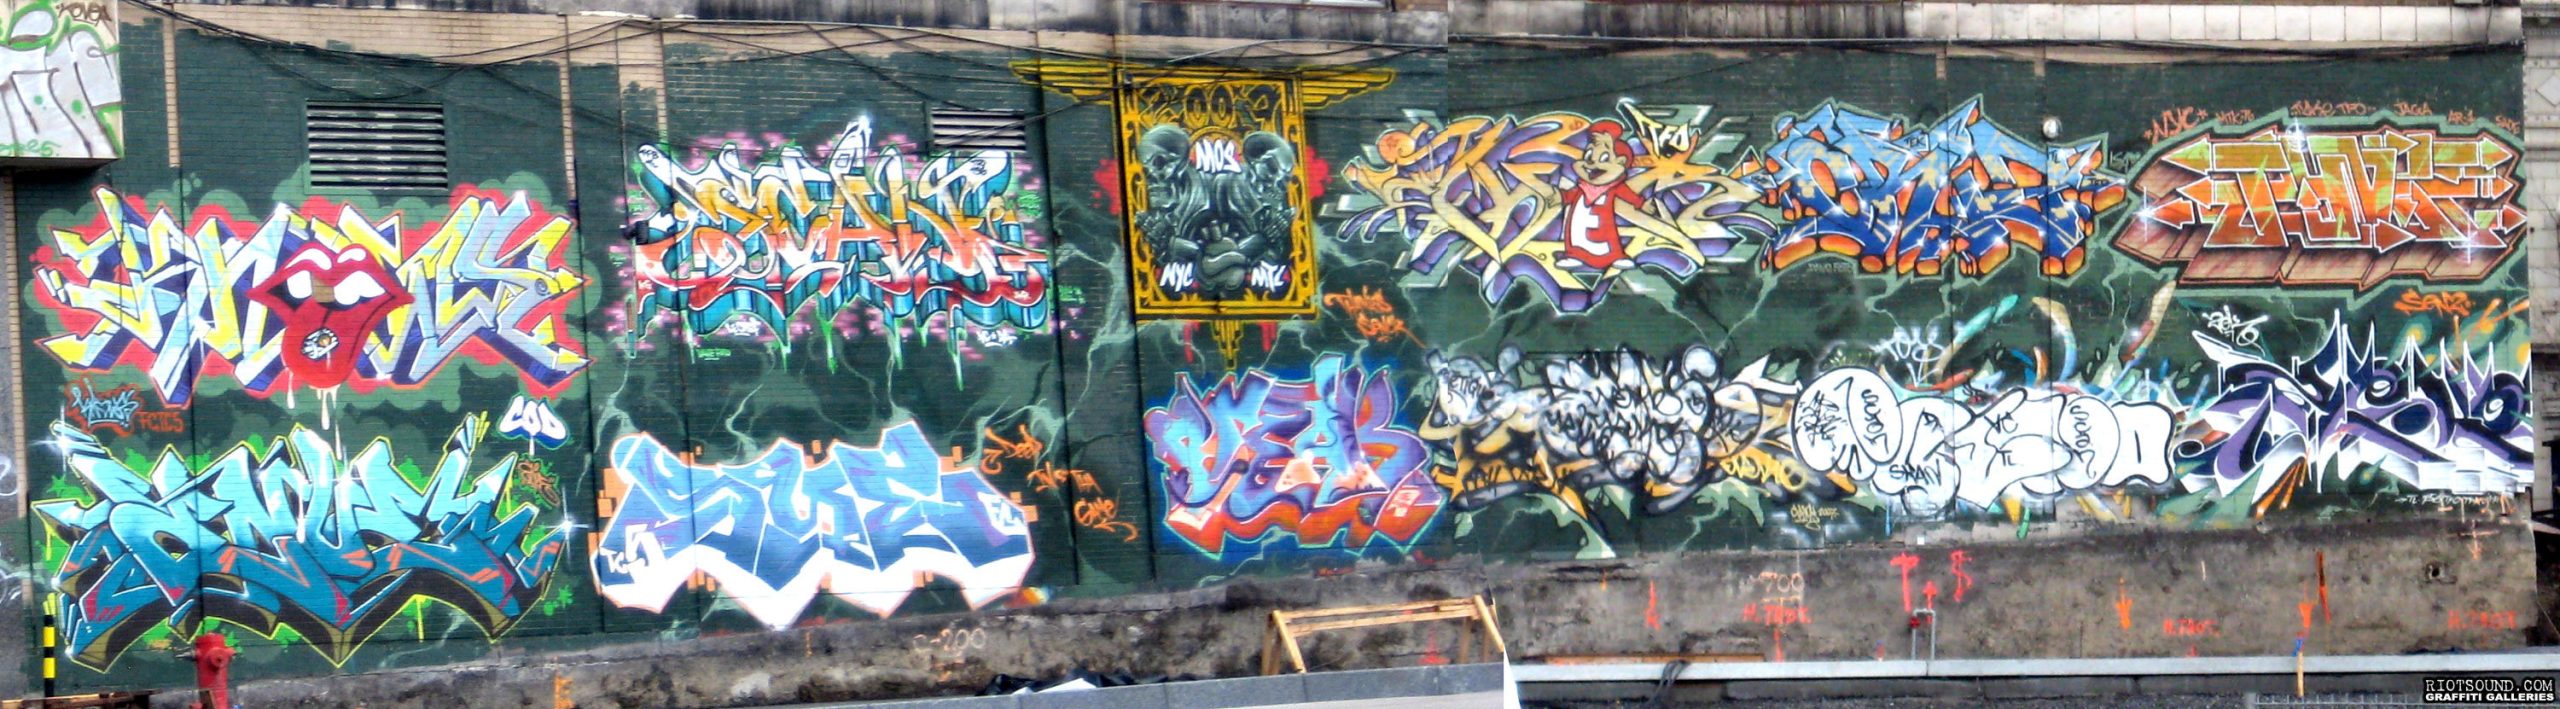 Graffiti Hall Of Fame Wall